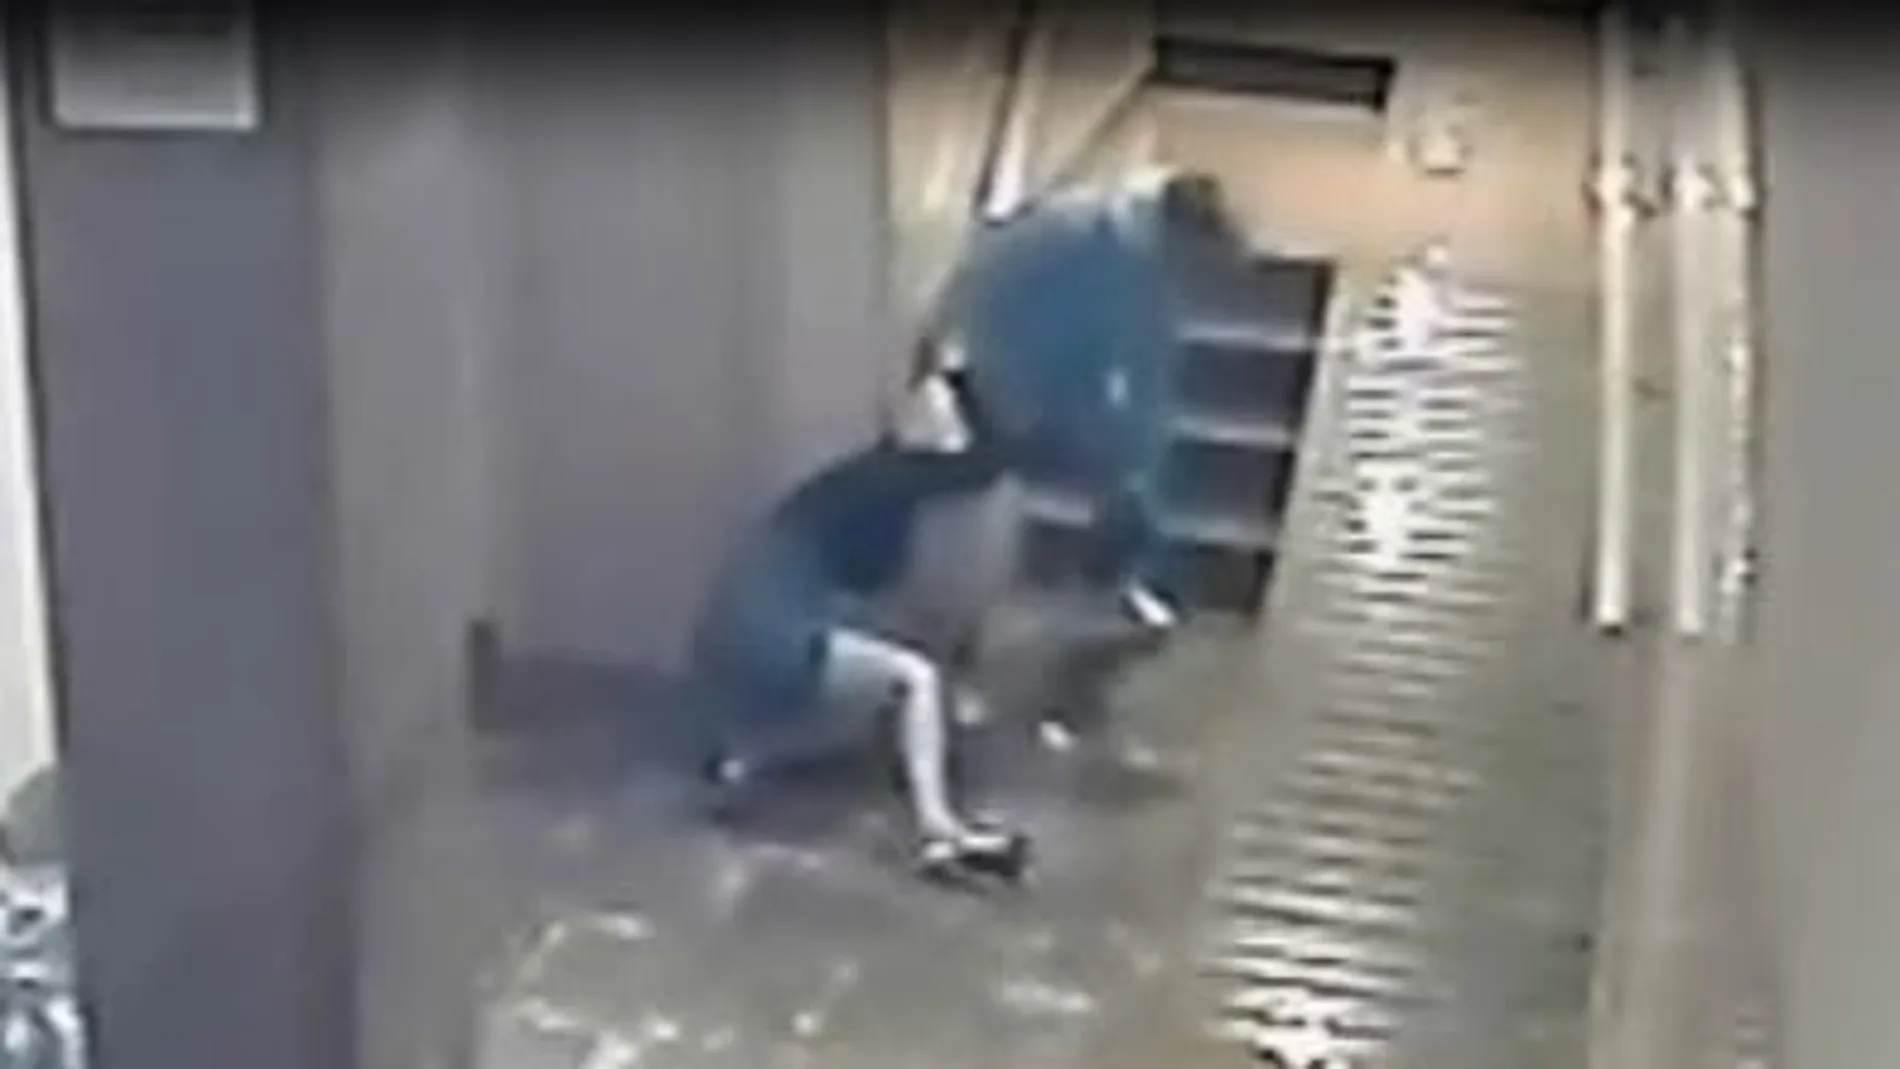 La mujer, tras ser agredida, fue arrastrada por los pelos hasta el ascensor